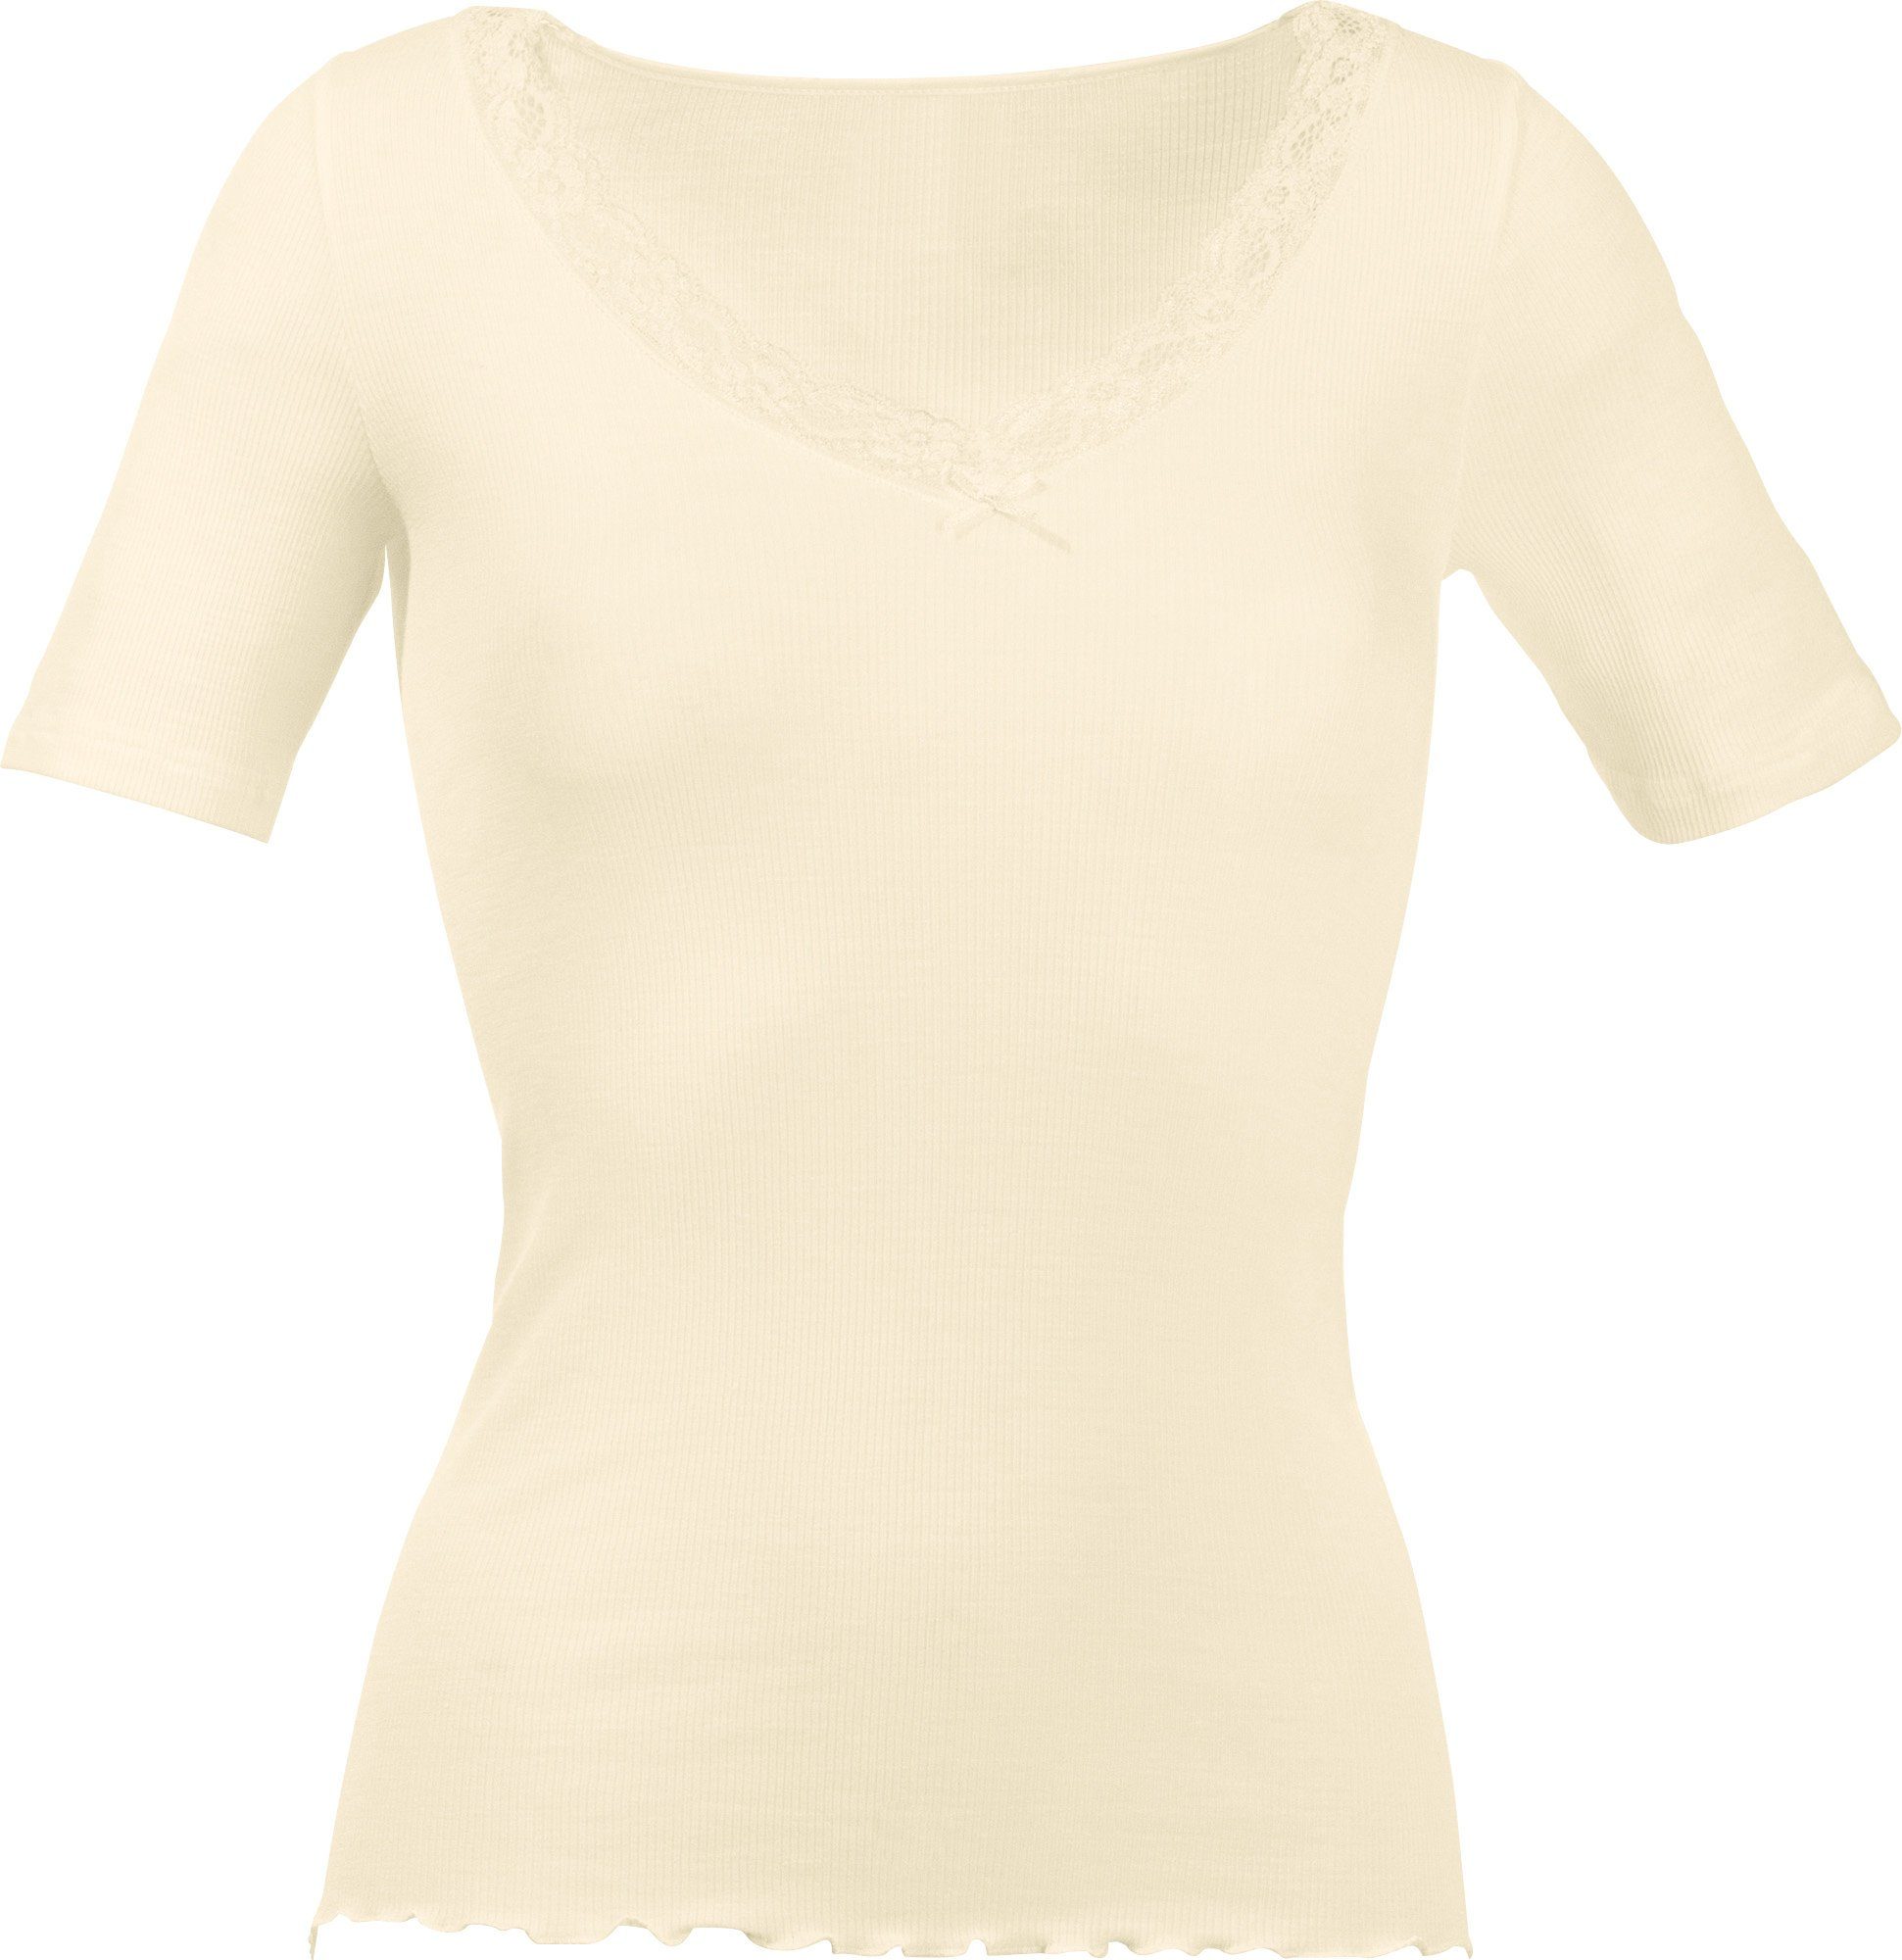 Nina Von C. Unterhemd Damen-Unterhemd, 1/2-Arm Feinripp Uni creme